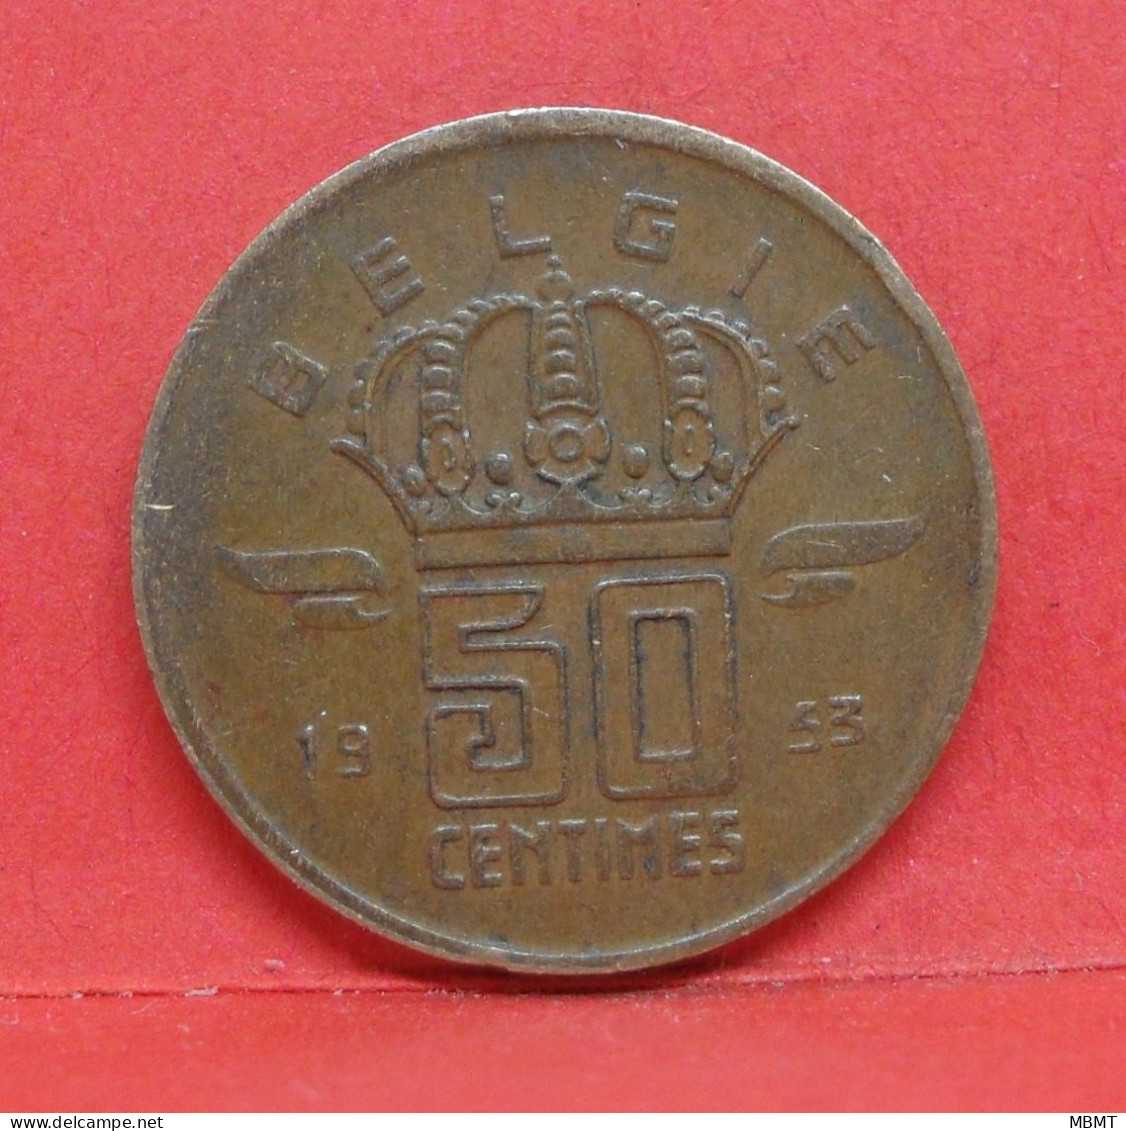 50 Centimes 1953 - TTB - Pièce Monnaie Belgie - Article N°1875 - 50 Cent